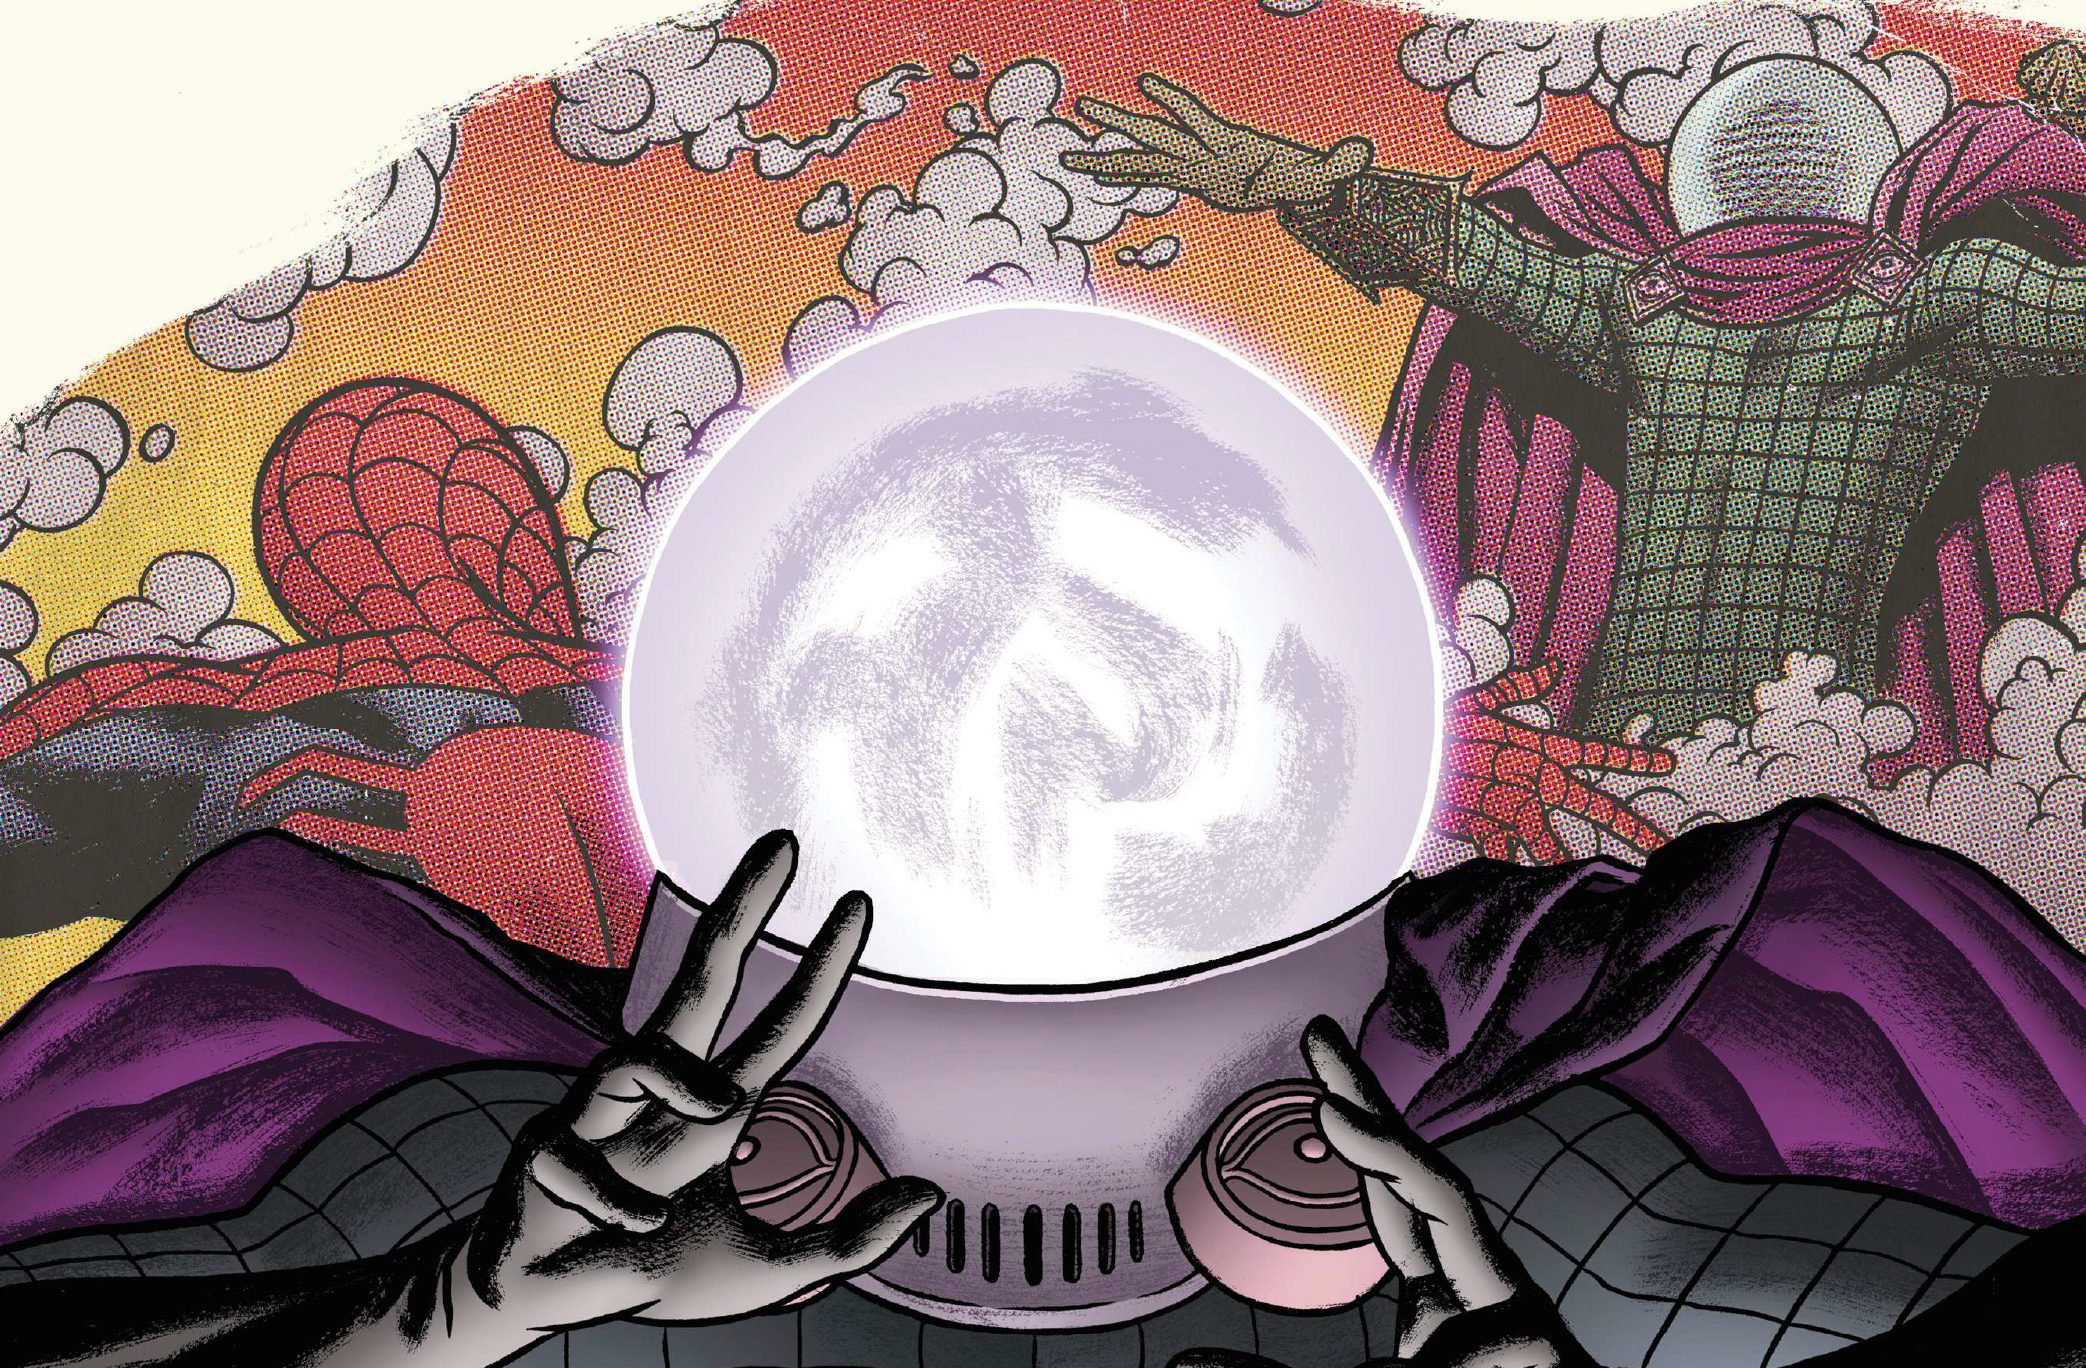 Spider-Man vs Mysterio - Un volume speciale ripercorre gli scontri più famosi